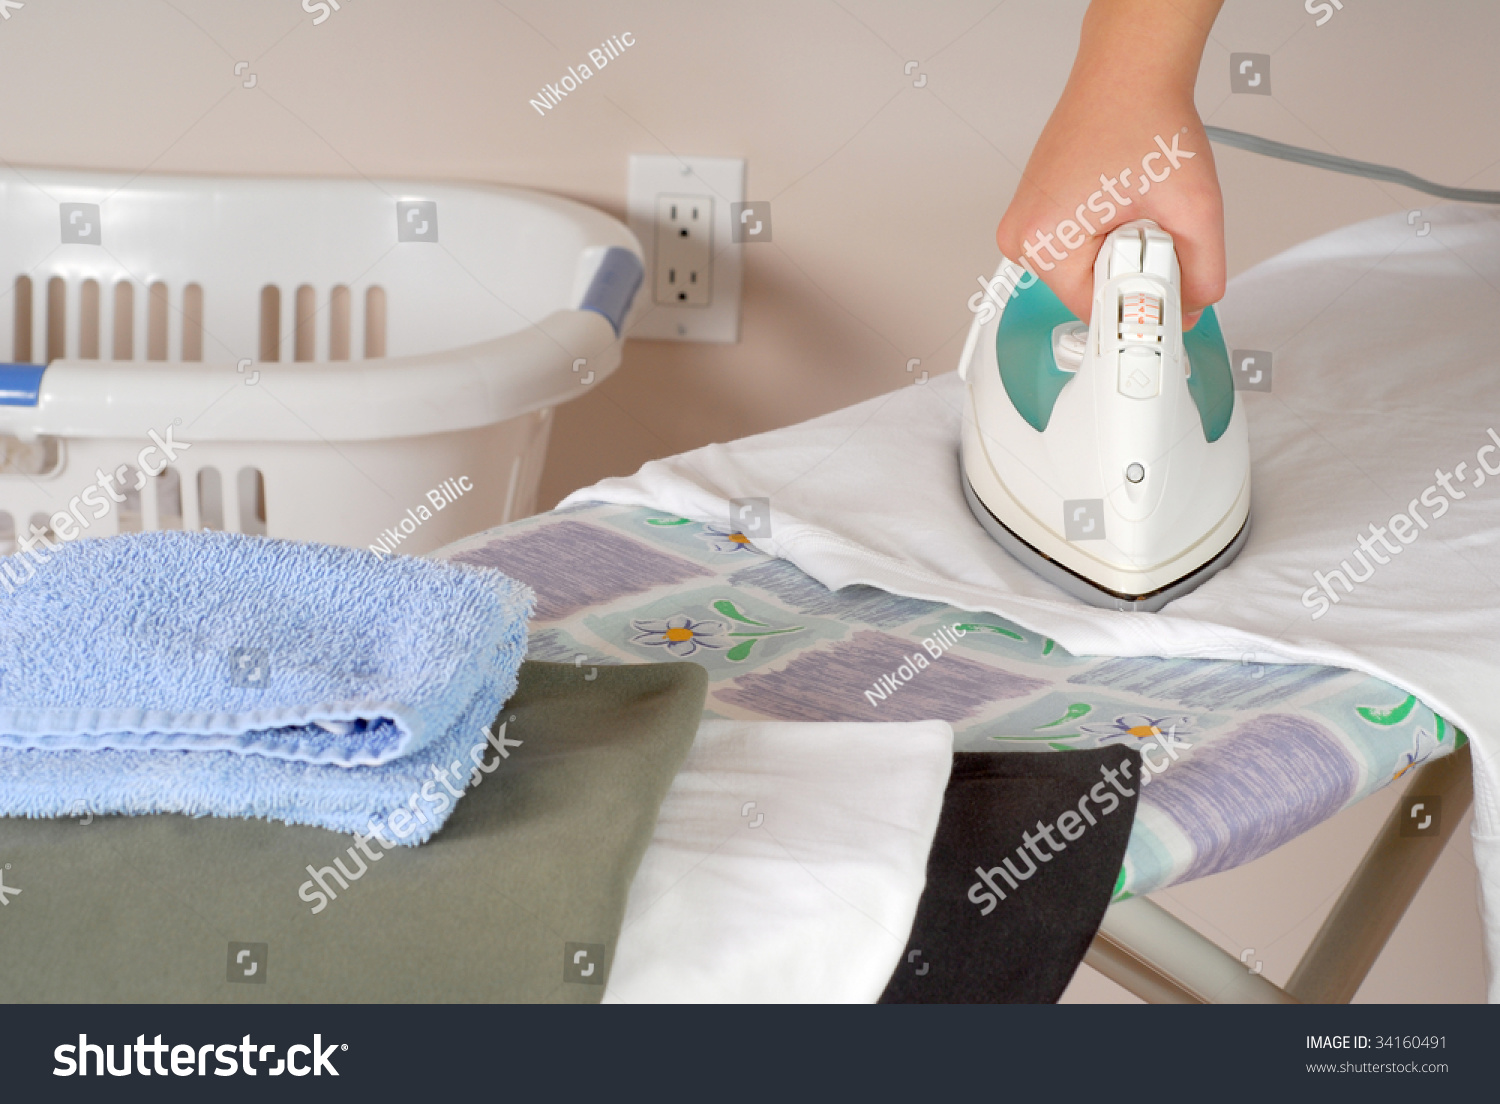 ironing basket